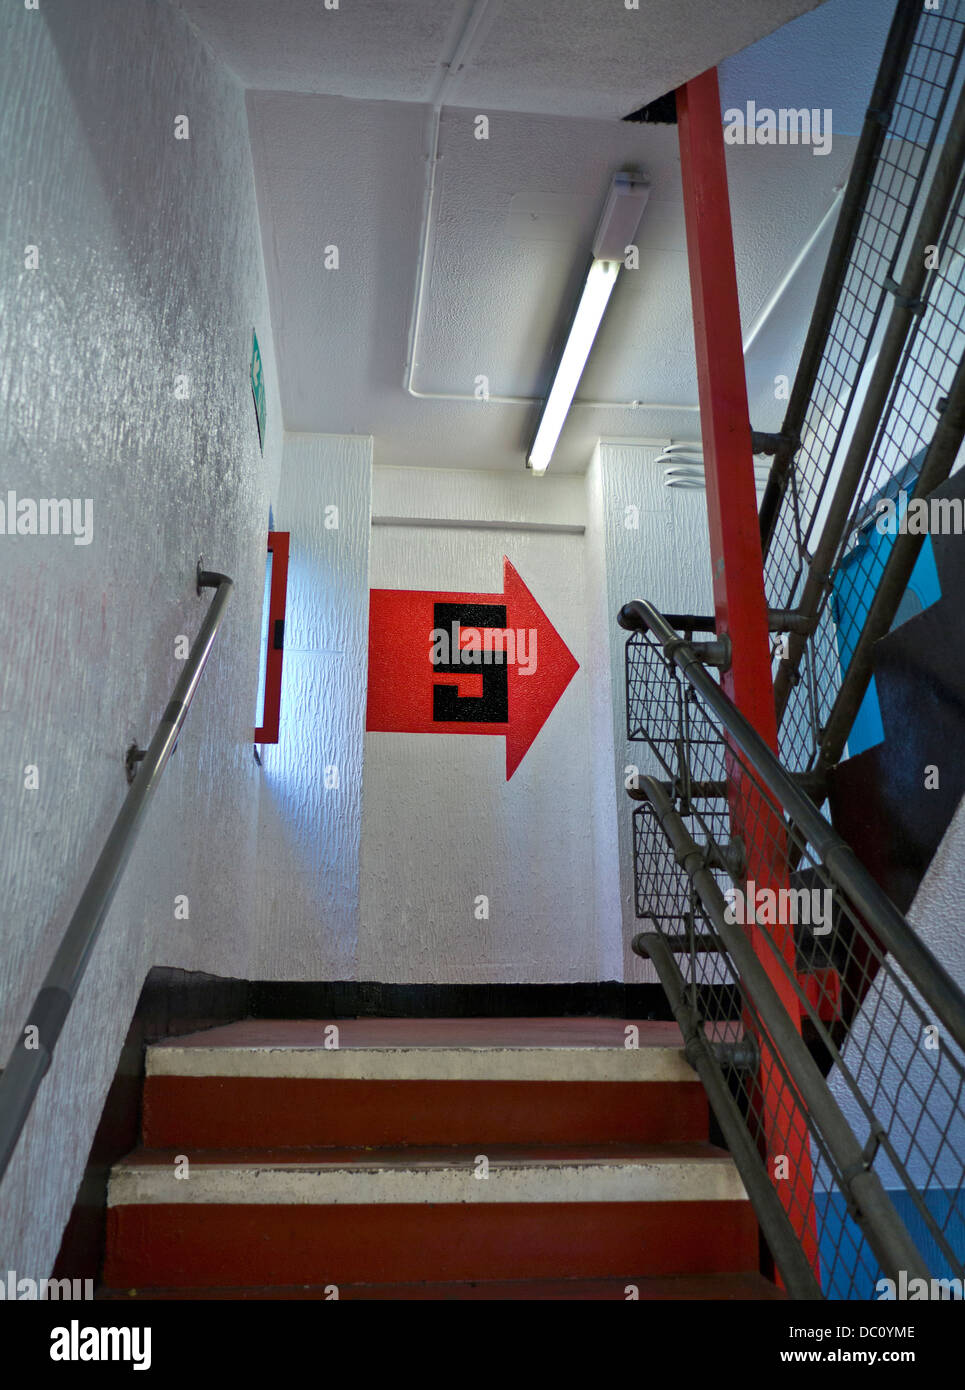 Escalera interior del municipio urbano limpio aparcamiento público escalera planta 5 firmar con recubrimiento anti-graffiti aplicado a las superficies interiores Foto de stock